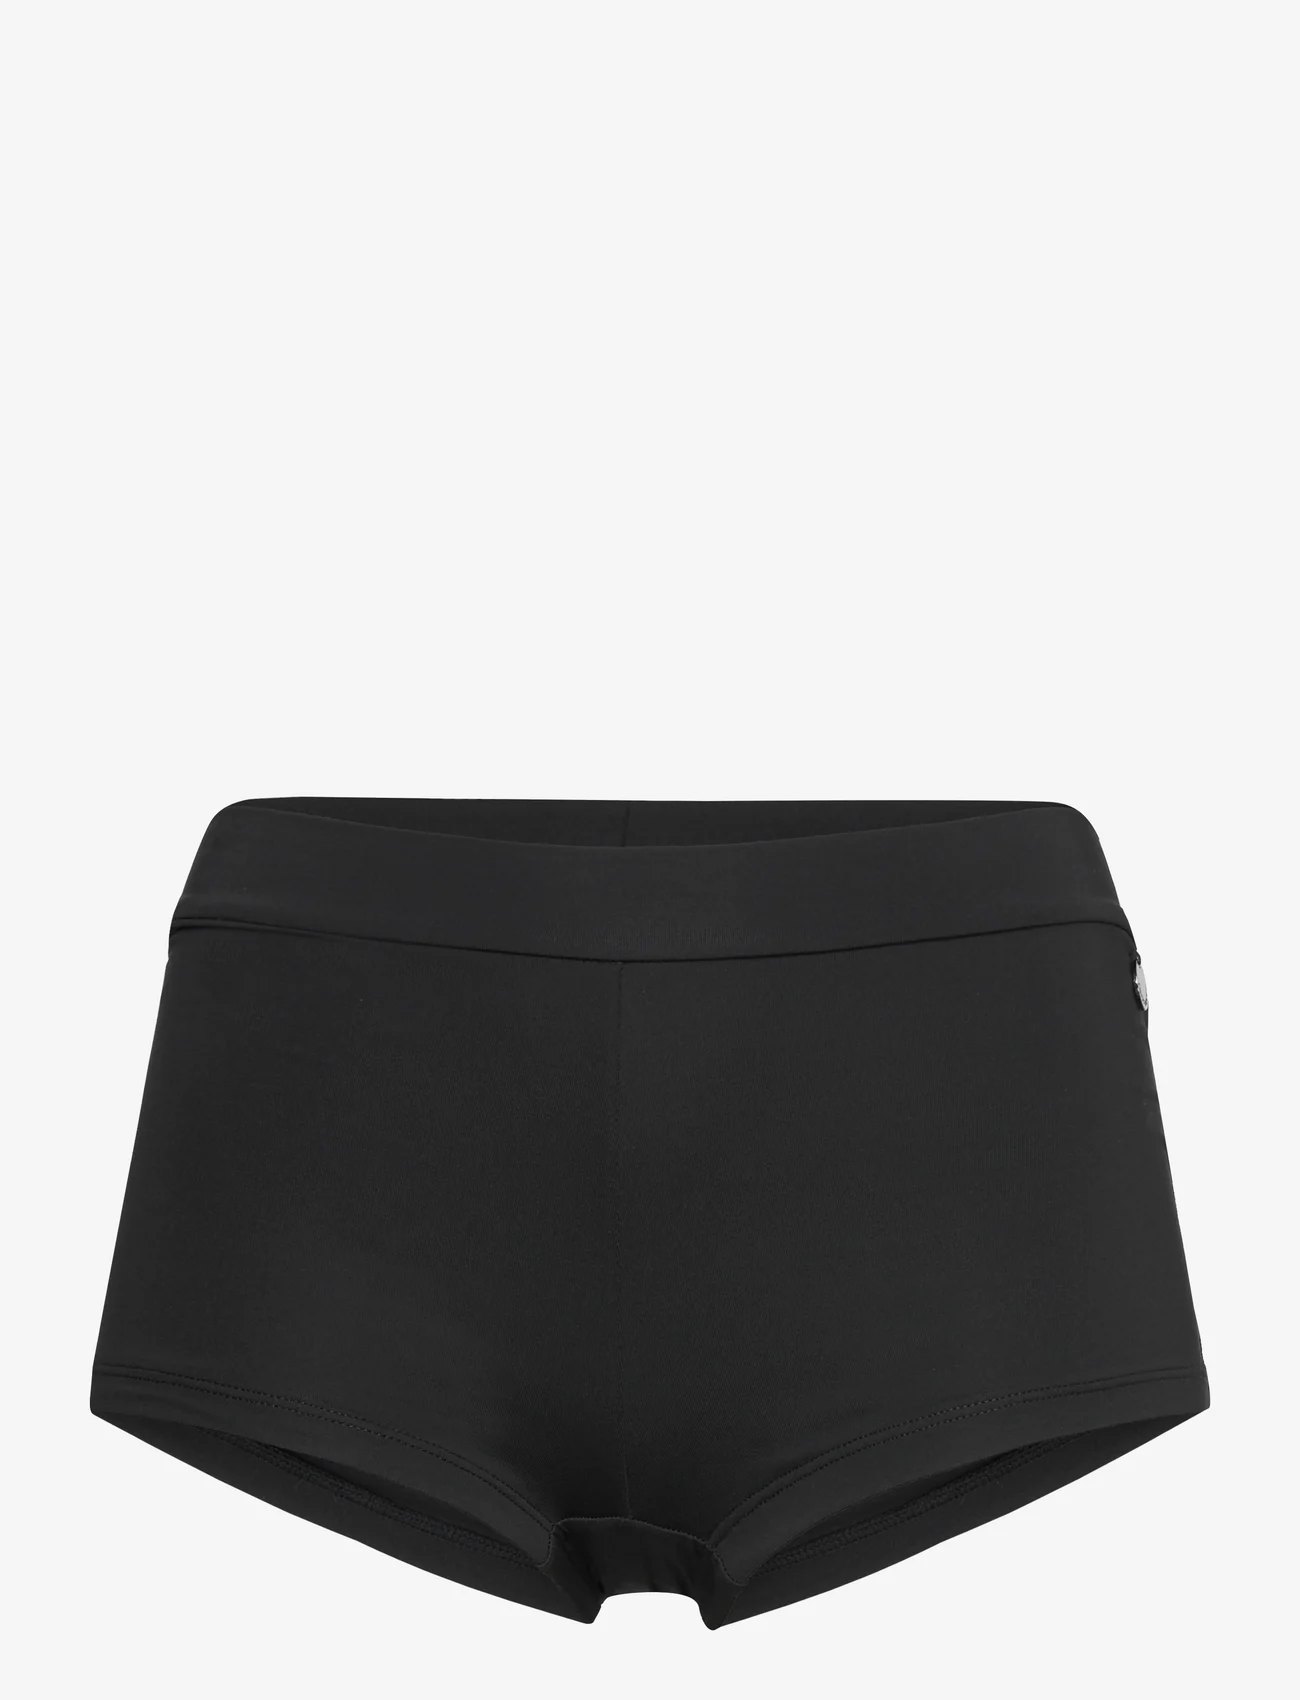 Panos Emporio - Agape Solid Bottom - bikini briefs - black - 1